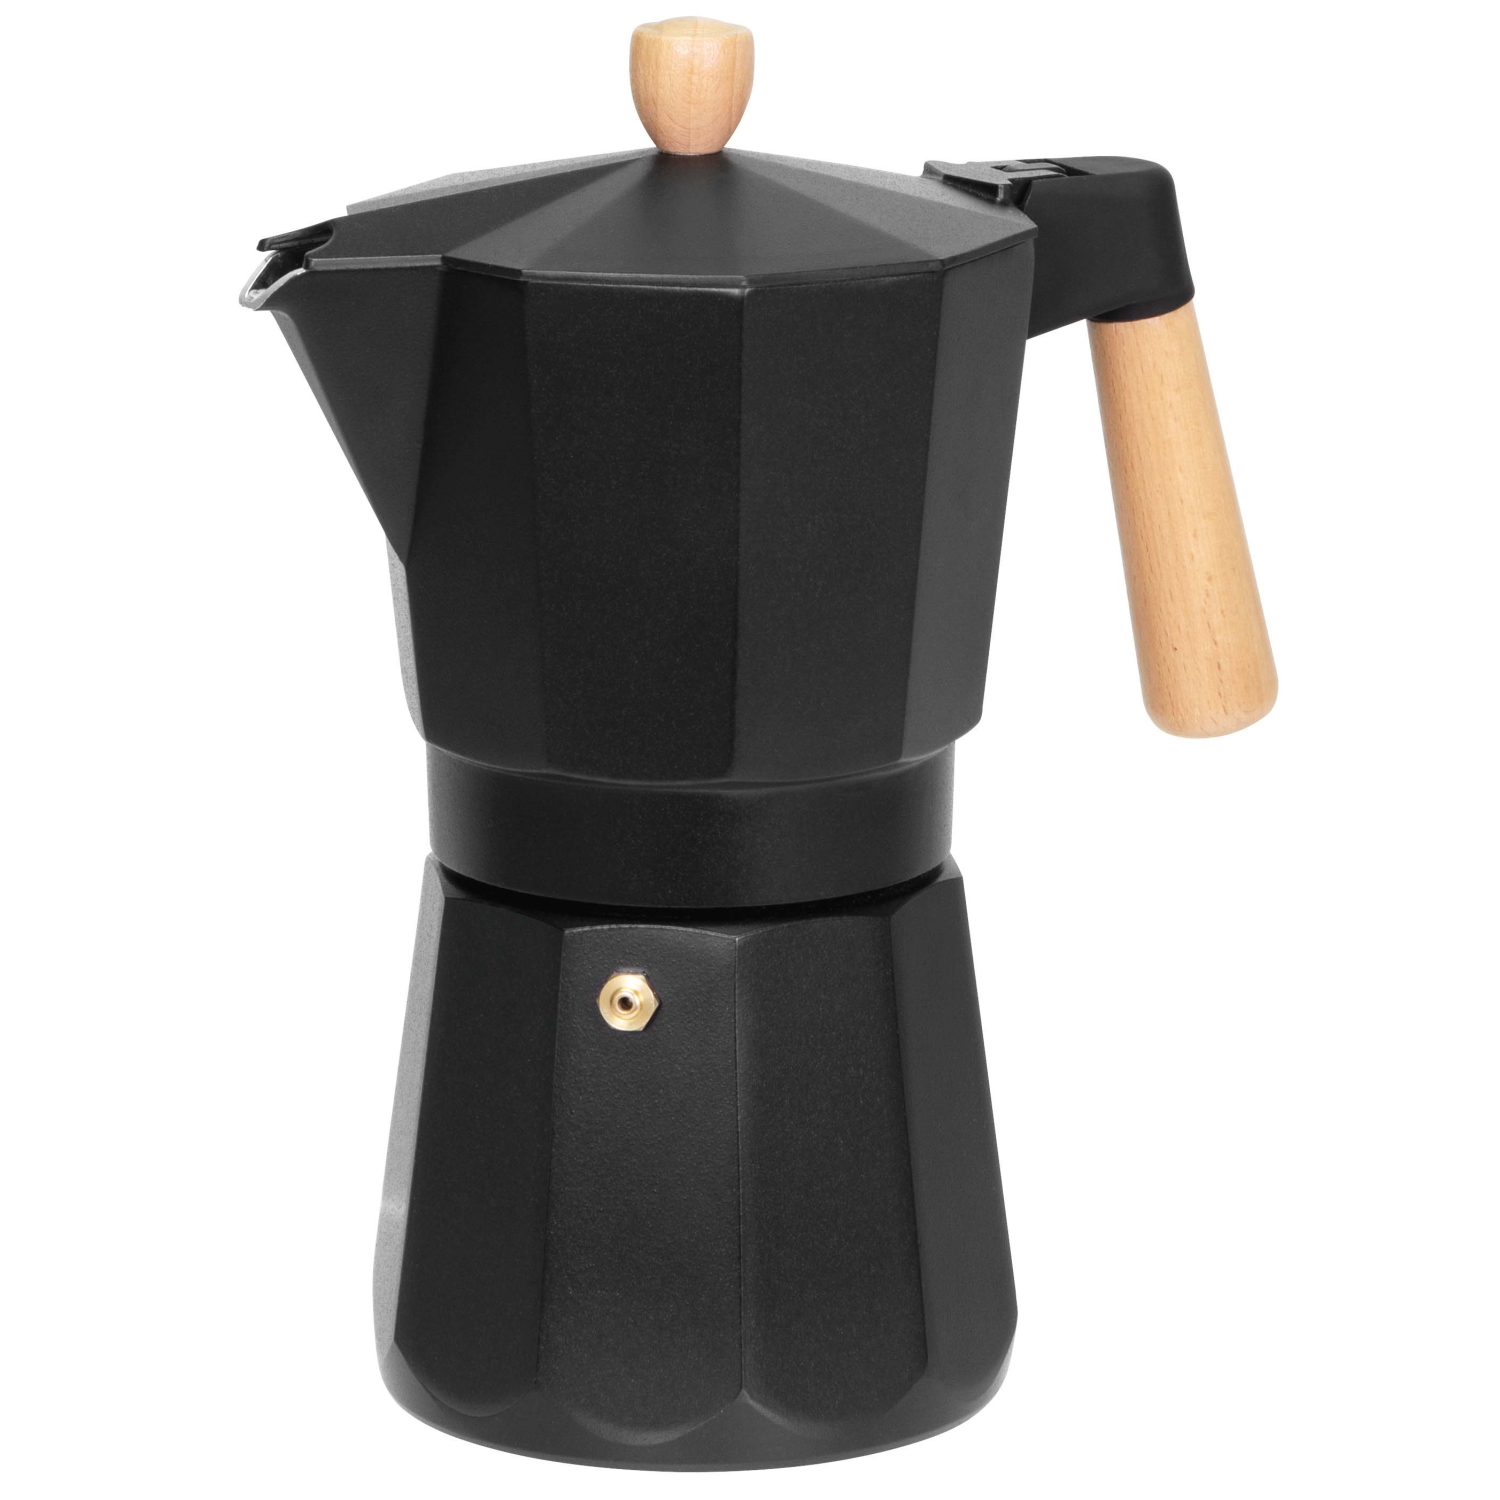 Avanti Malmo Espresso Maker 9 Cup Black